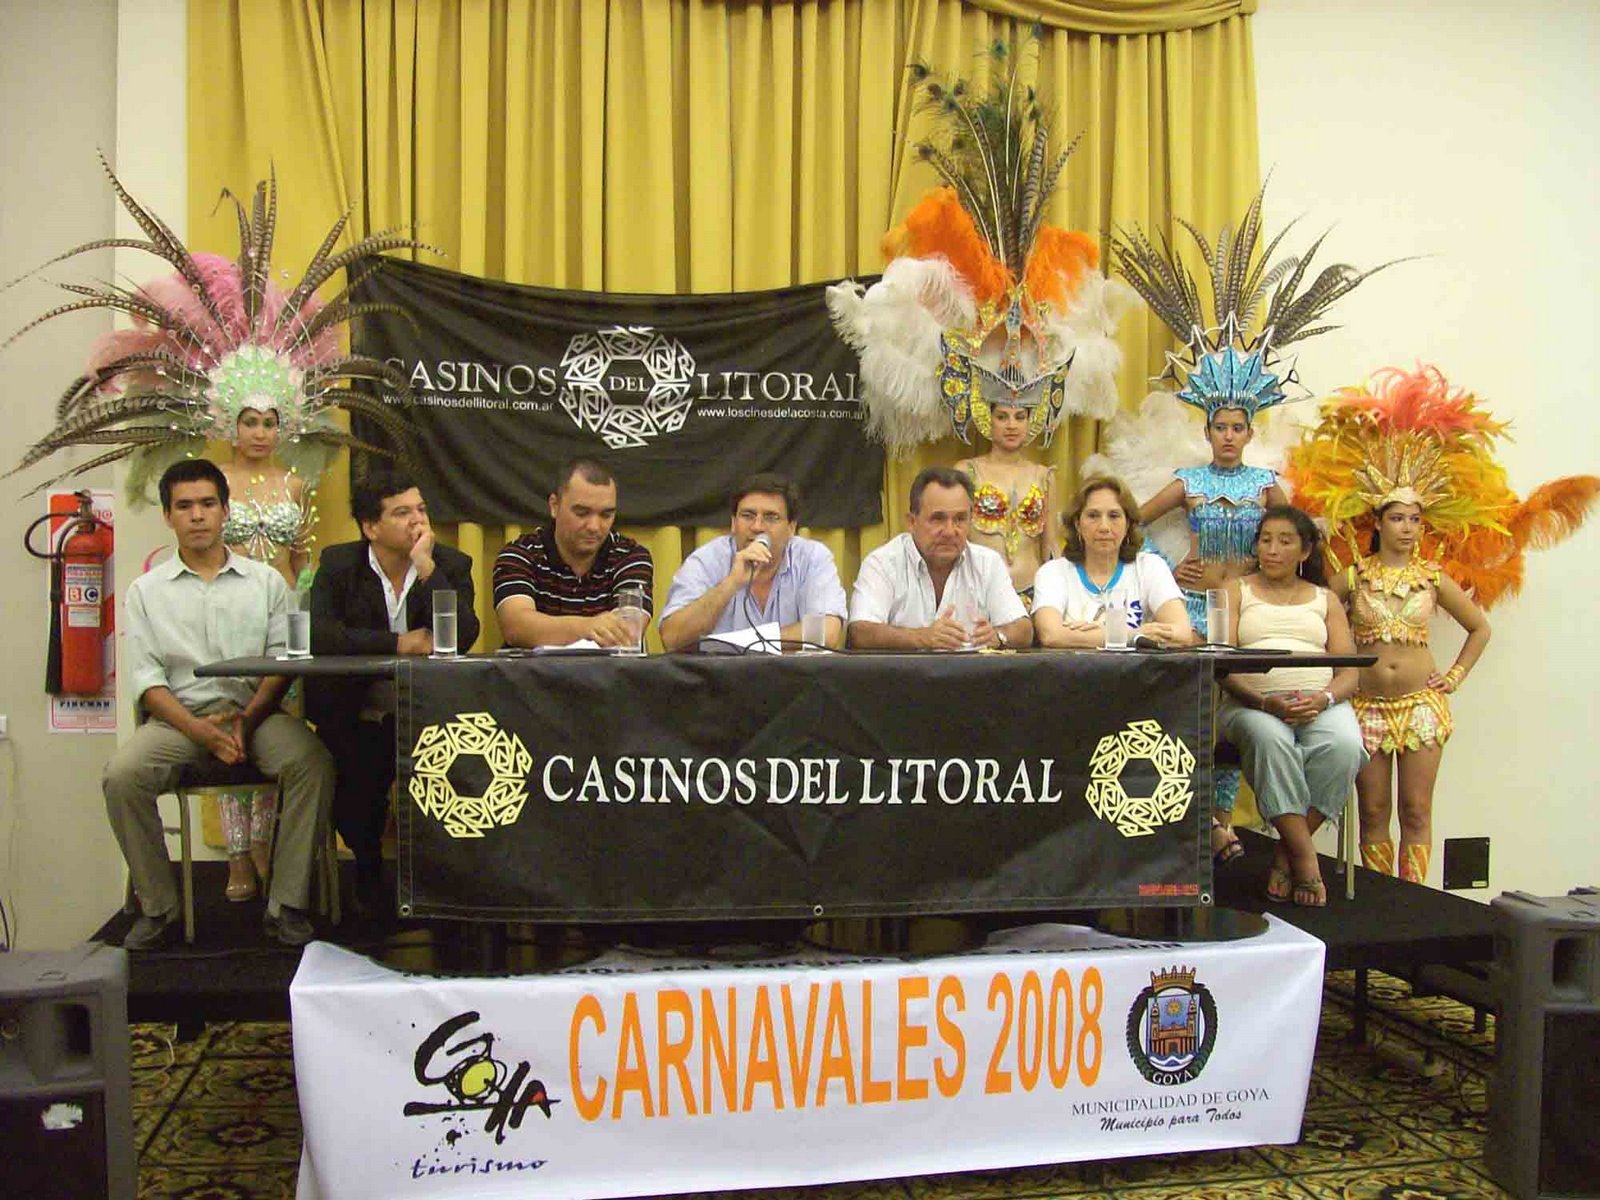 [lanzamiento+del+Carnaval+goyano+2008-+autoridades,+funcionarios+y+presidentes+de+comparsas.jpg]